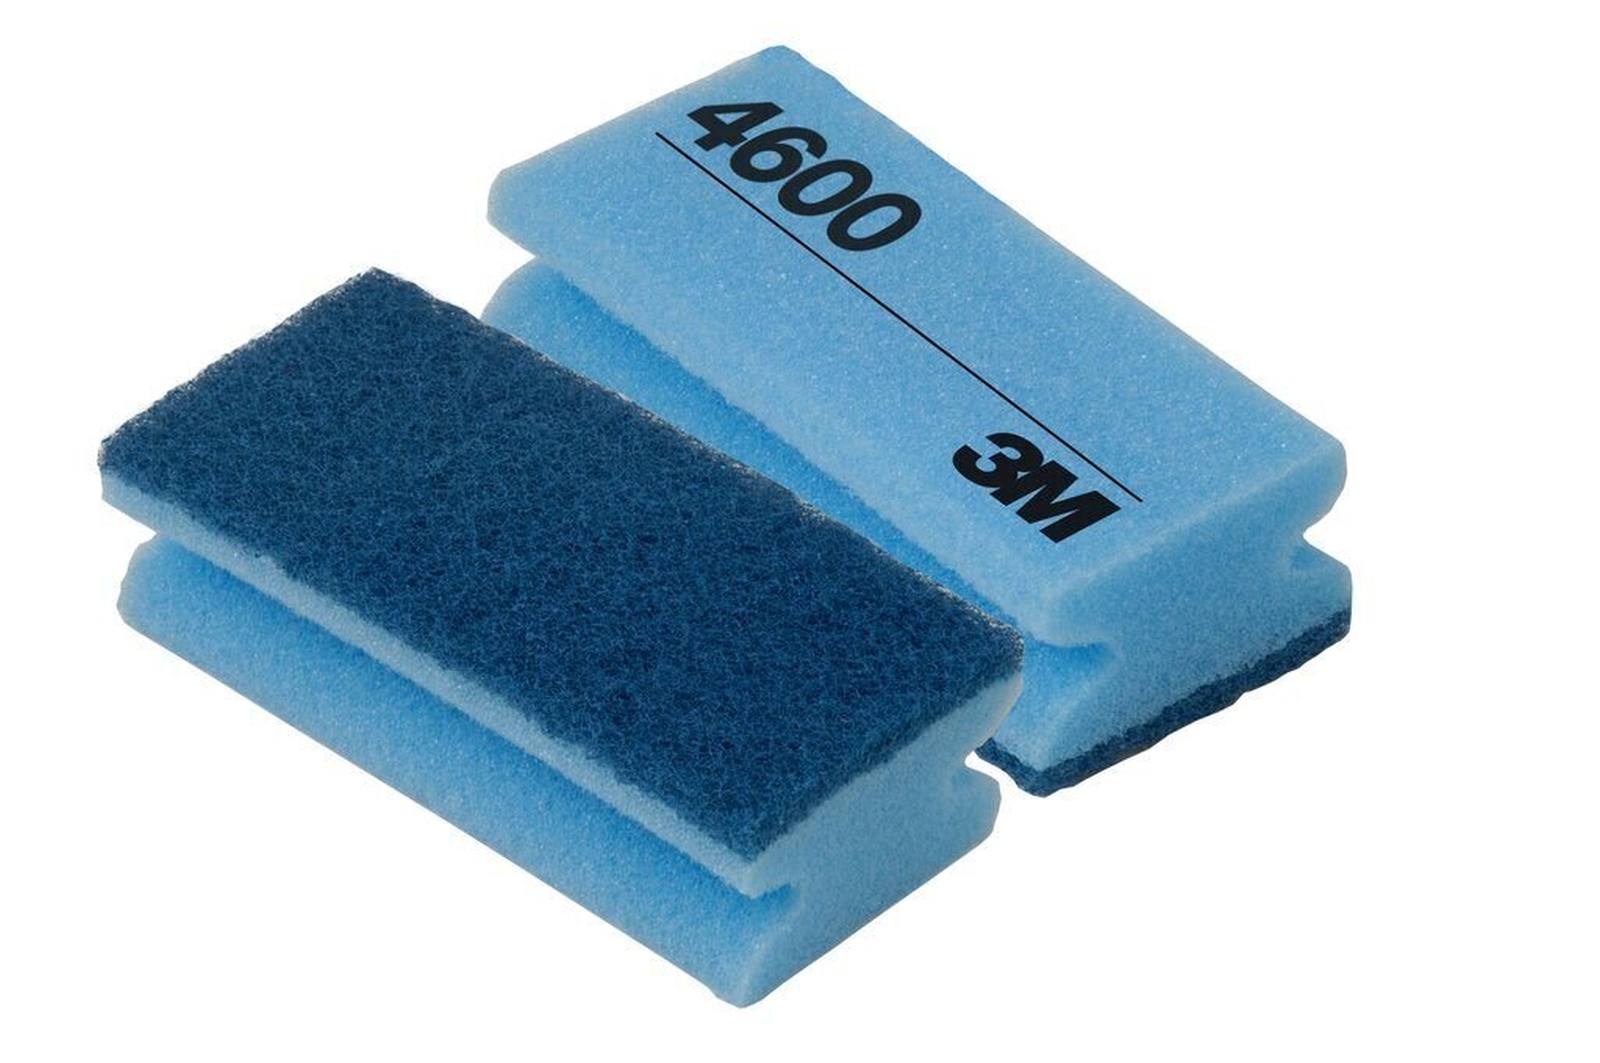 3M Scotch-Brite Reinigungsschwamm 4600 blau/blau 70 mm x 150 mm